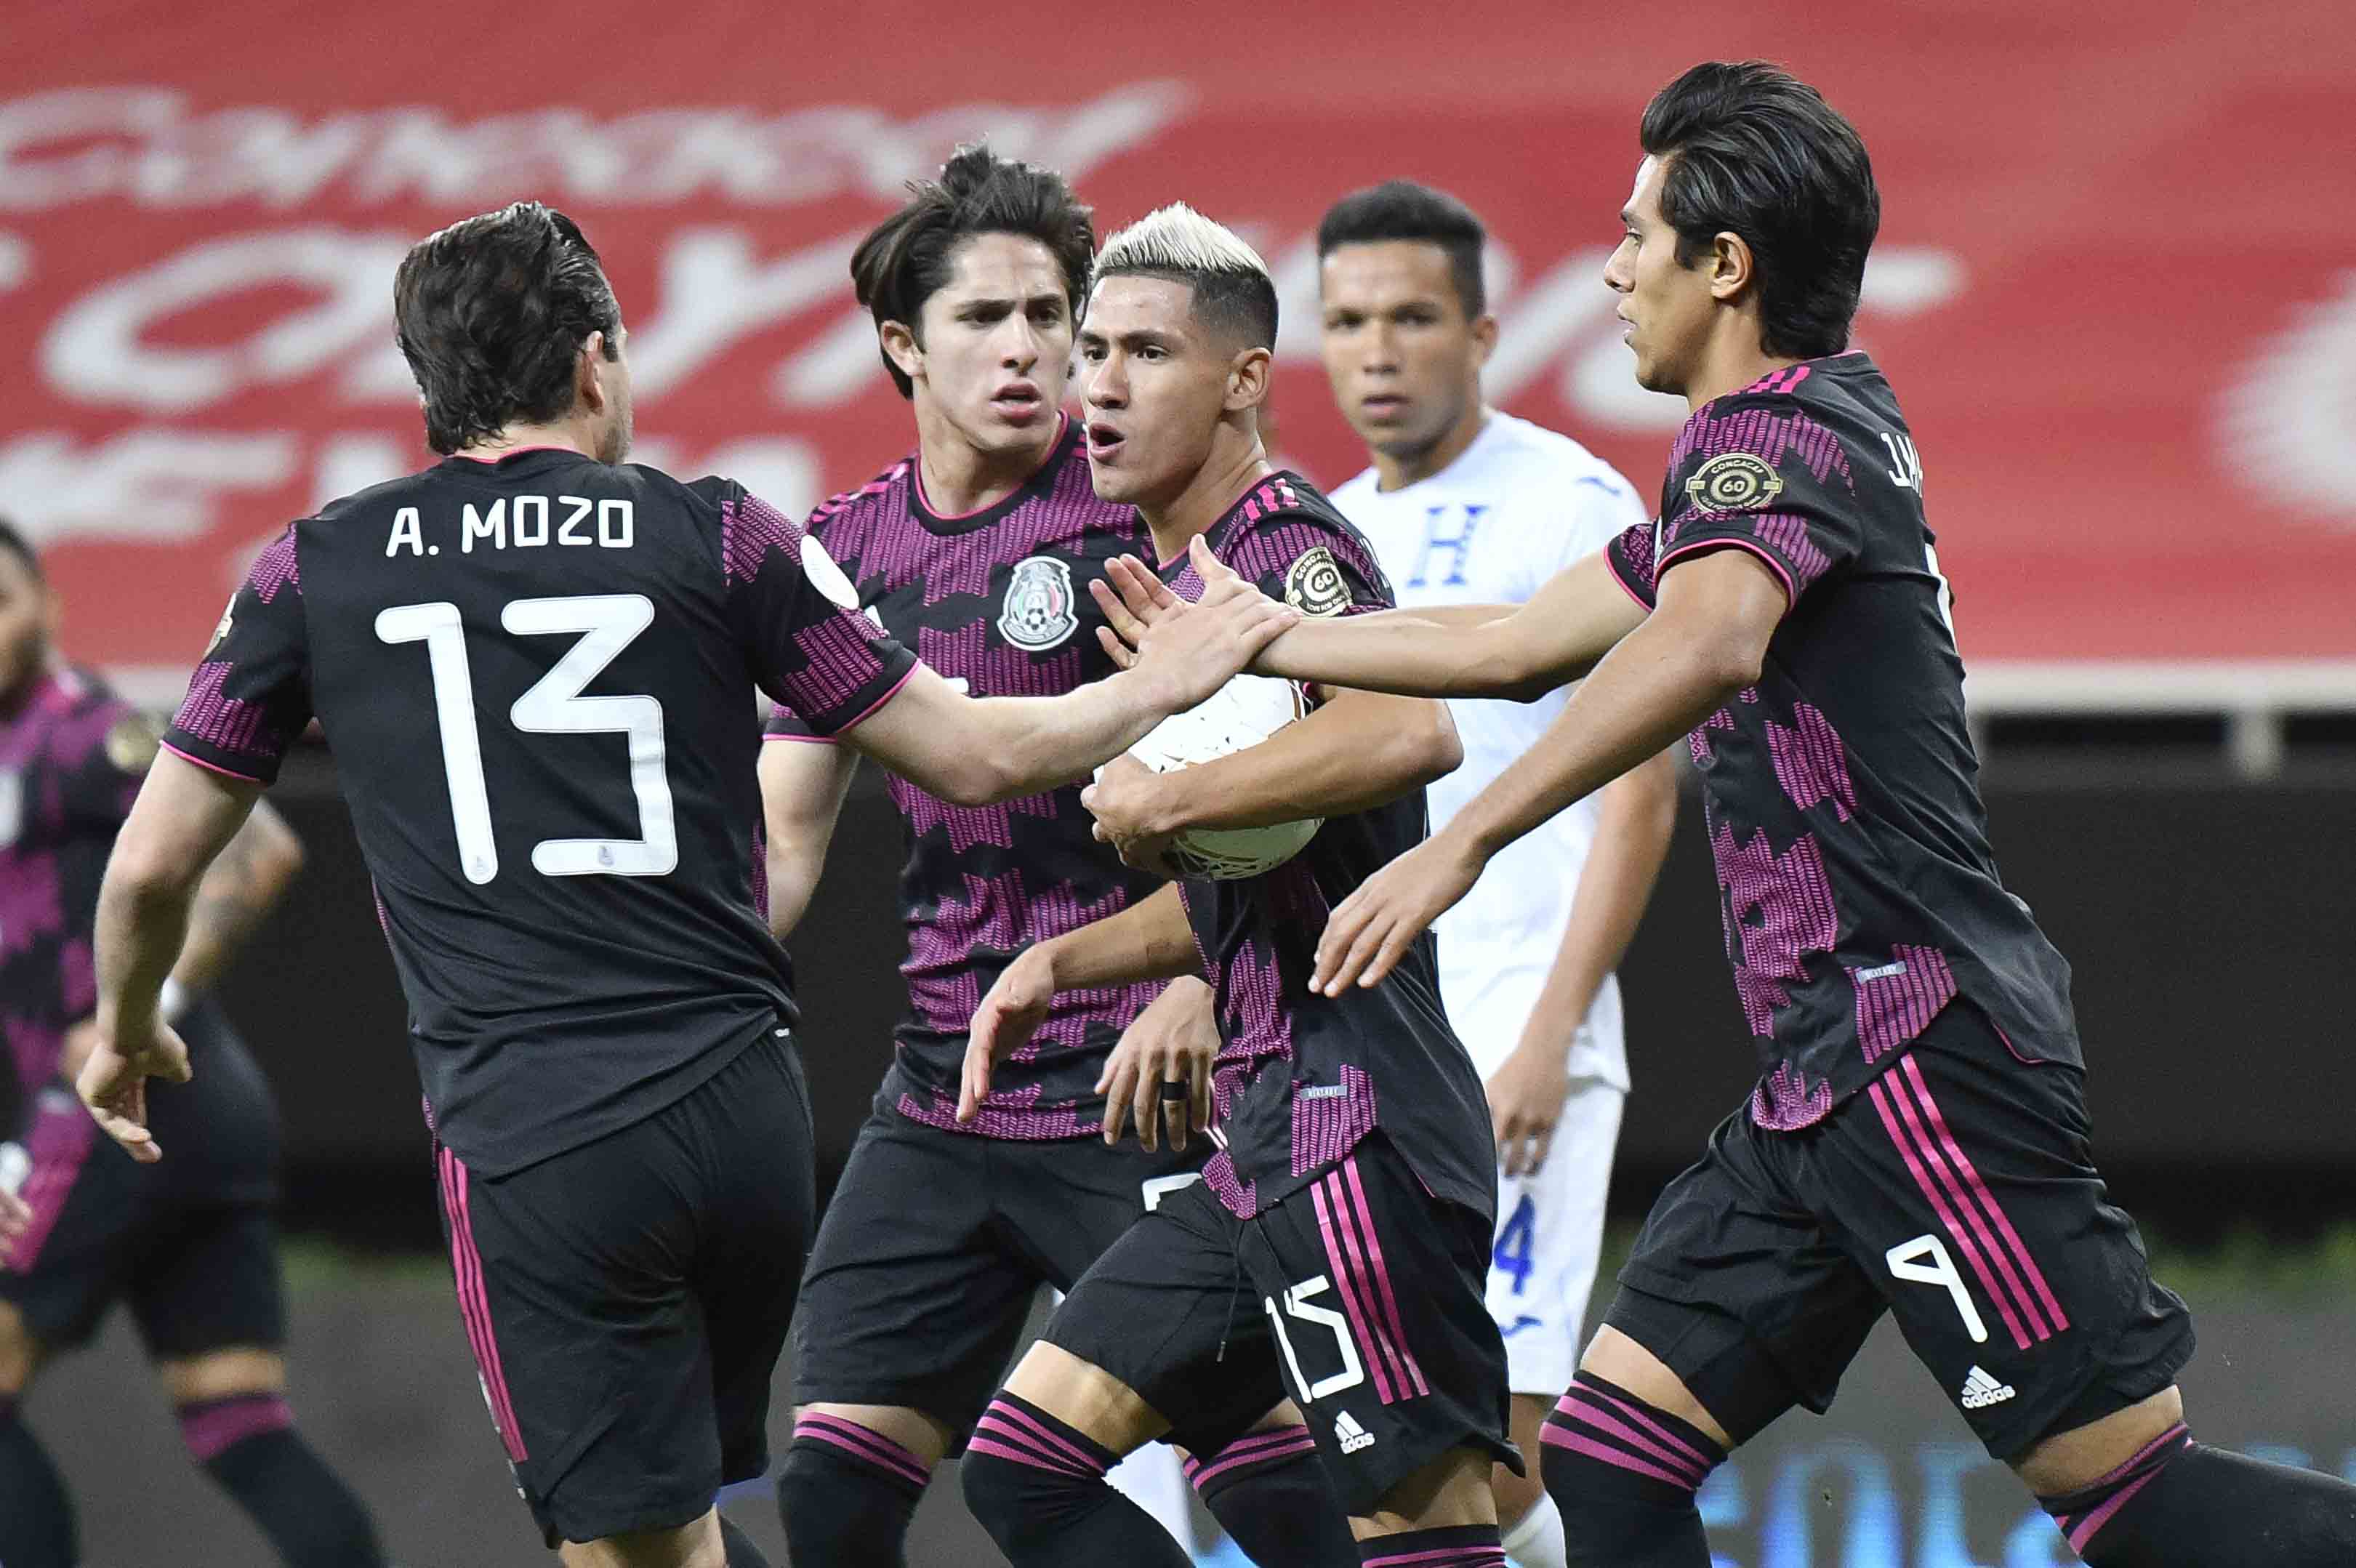 Мексика 23 аргентина 23